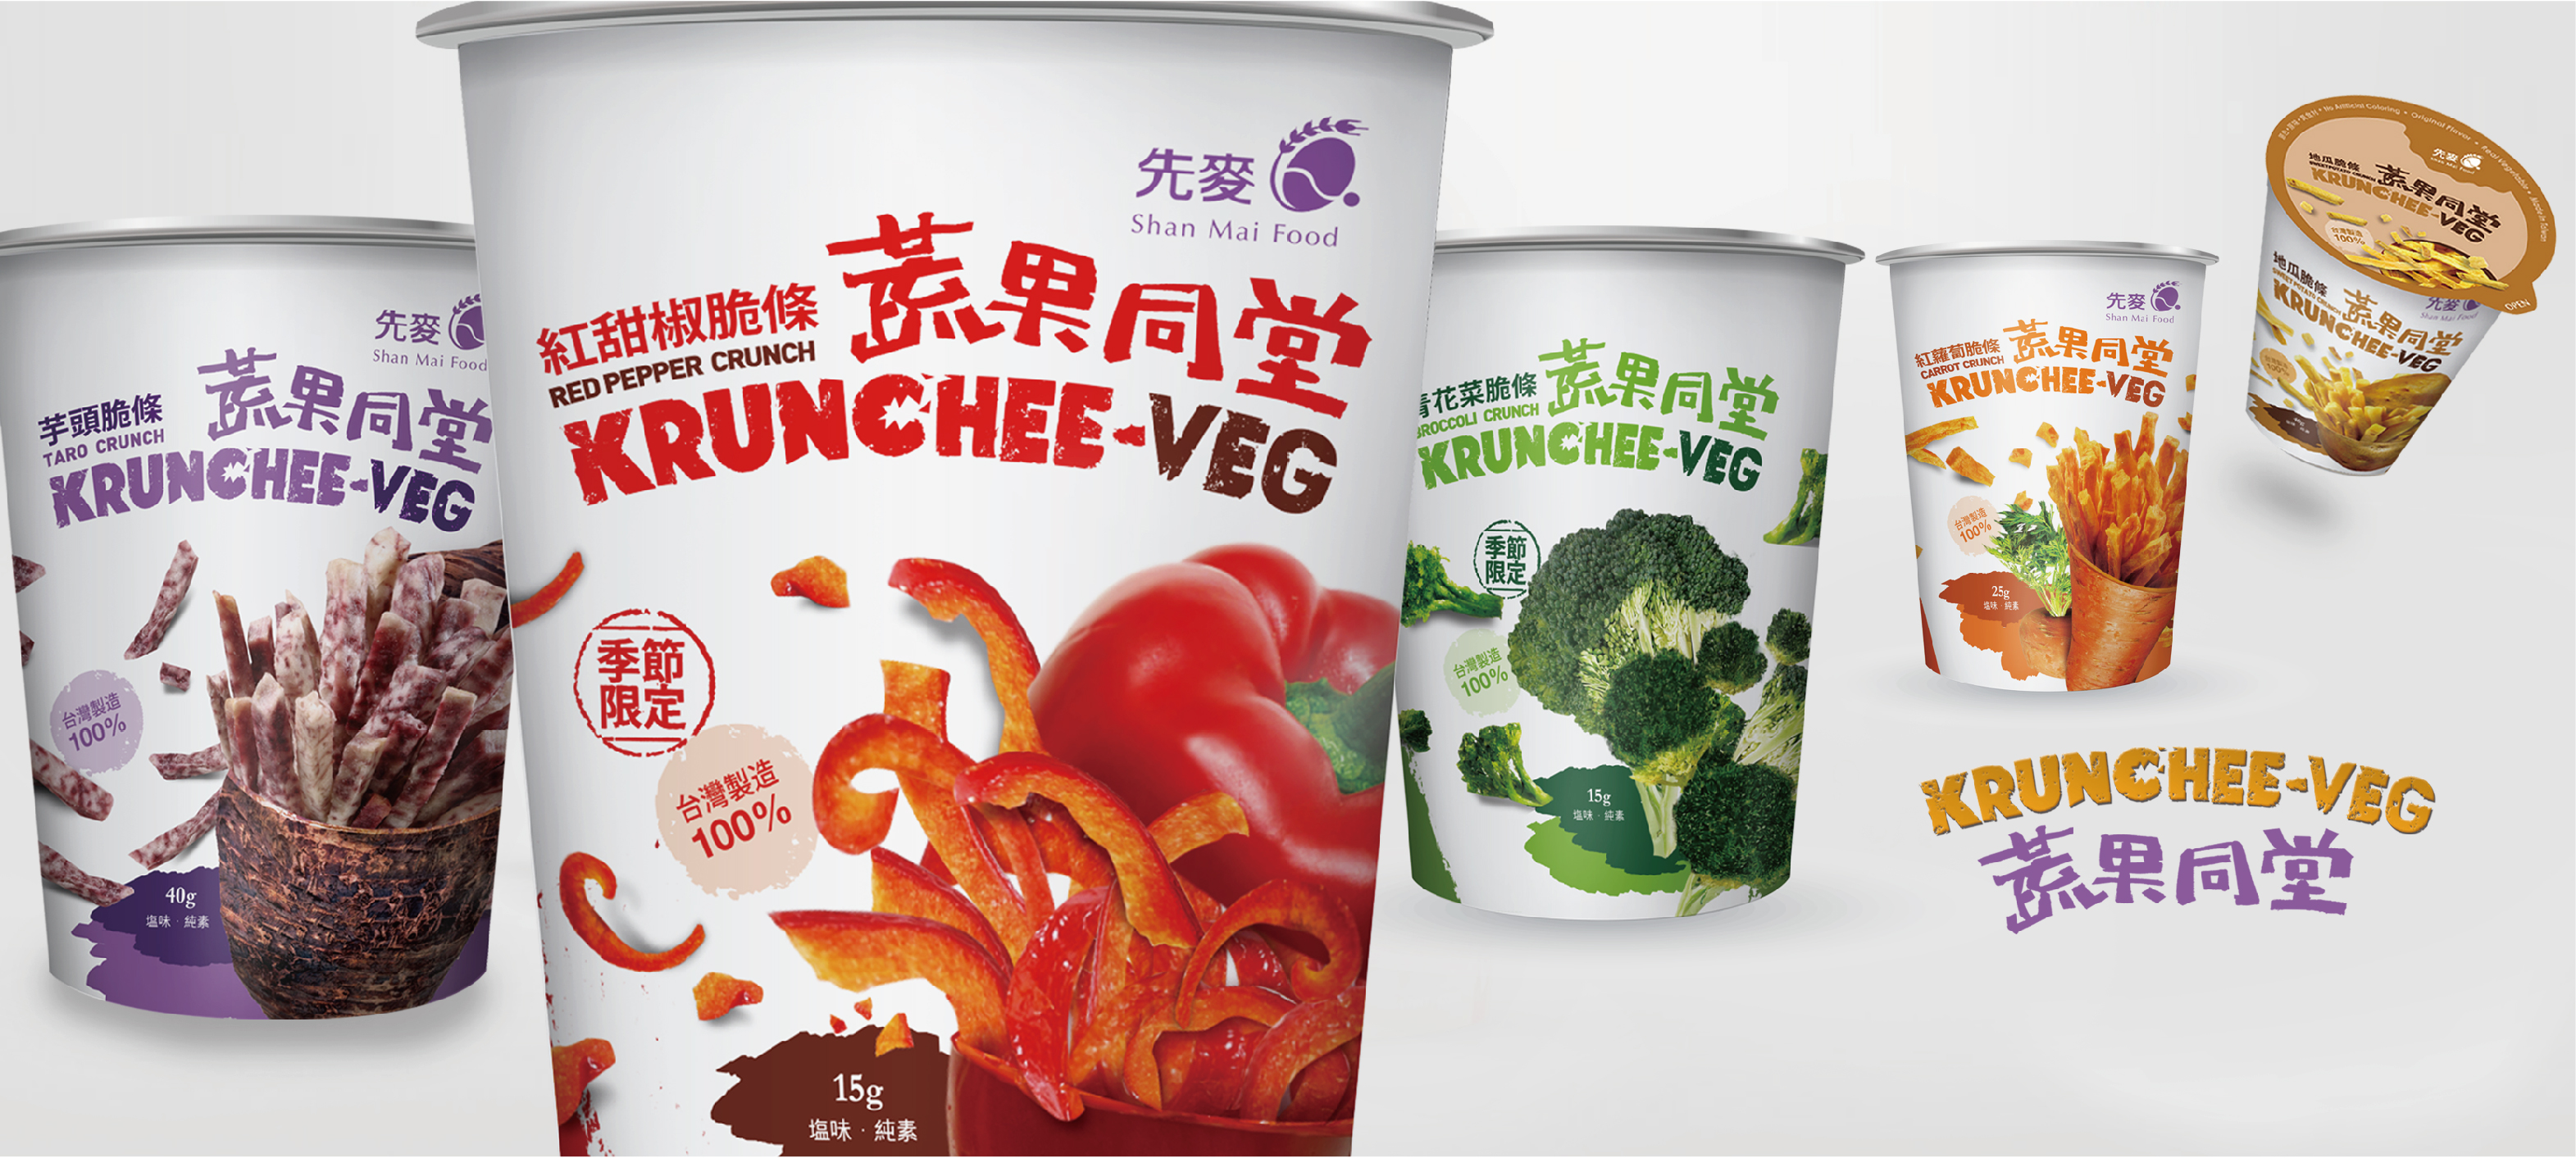 2015台北國際食品展06/24(三)-06/27(六) 先麥創新發表「蔬果同堂KRUNCGEE-VEG」歡迎蒞臨指導